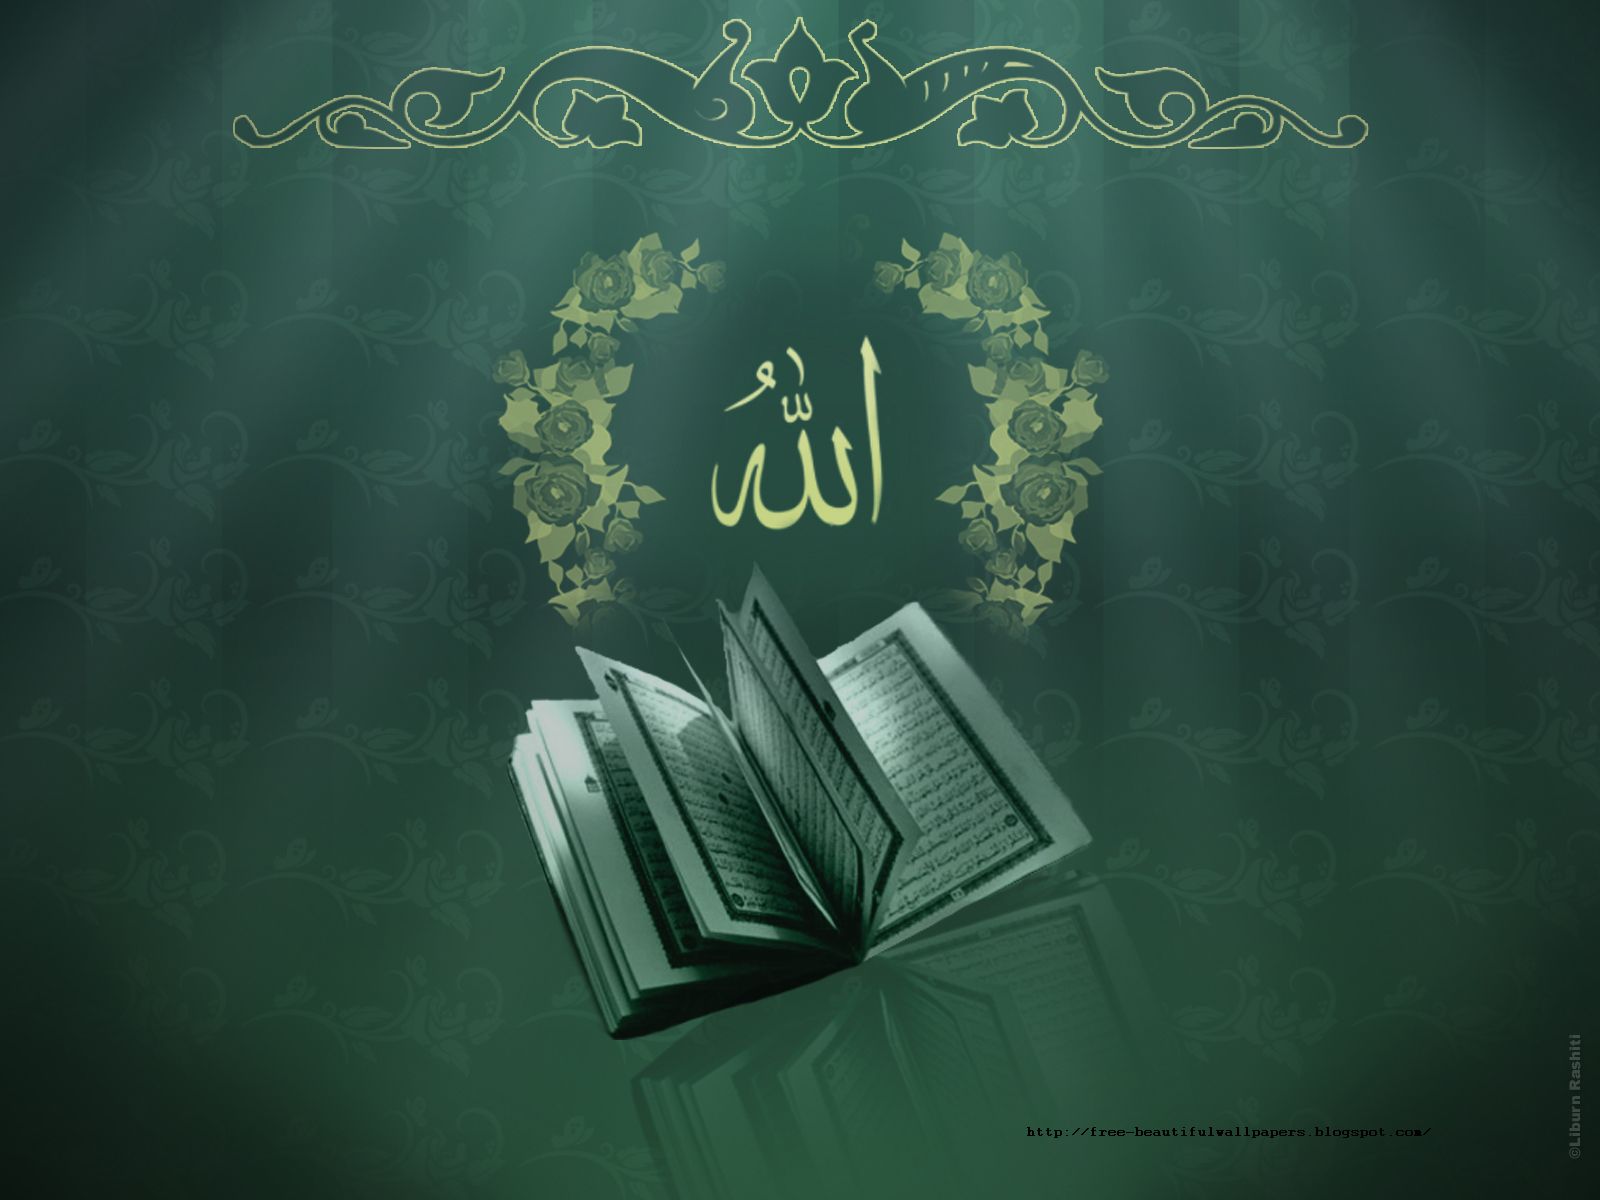 49+] Islamic Wallpapers Free Download - WallpaperSafari